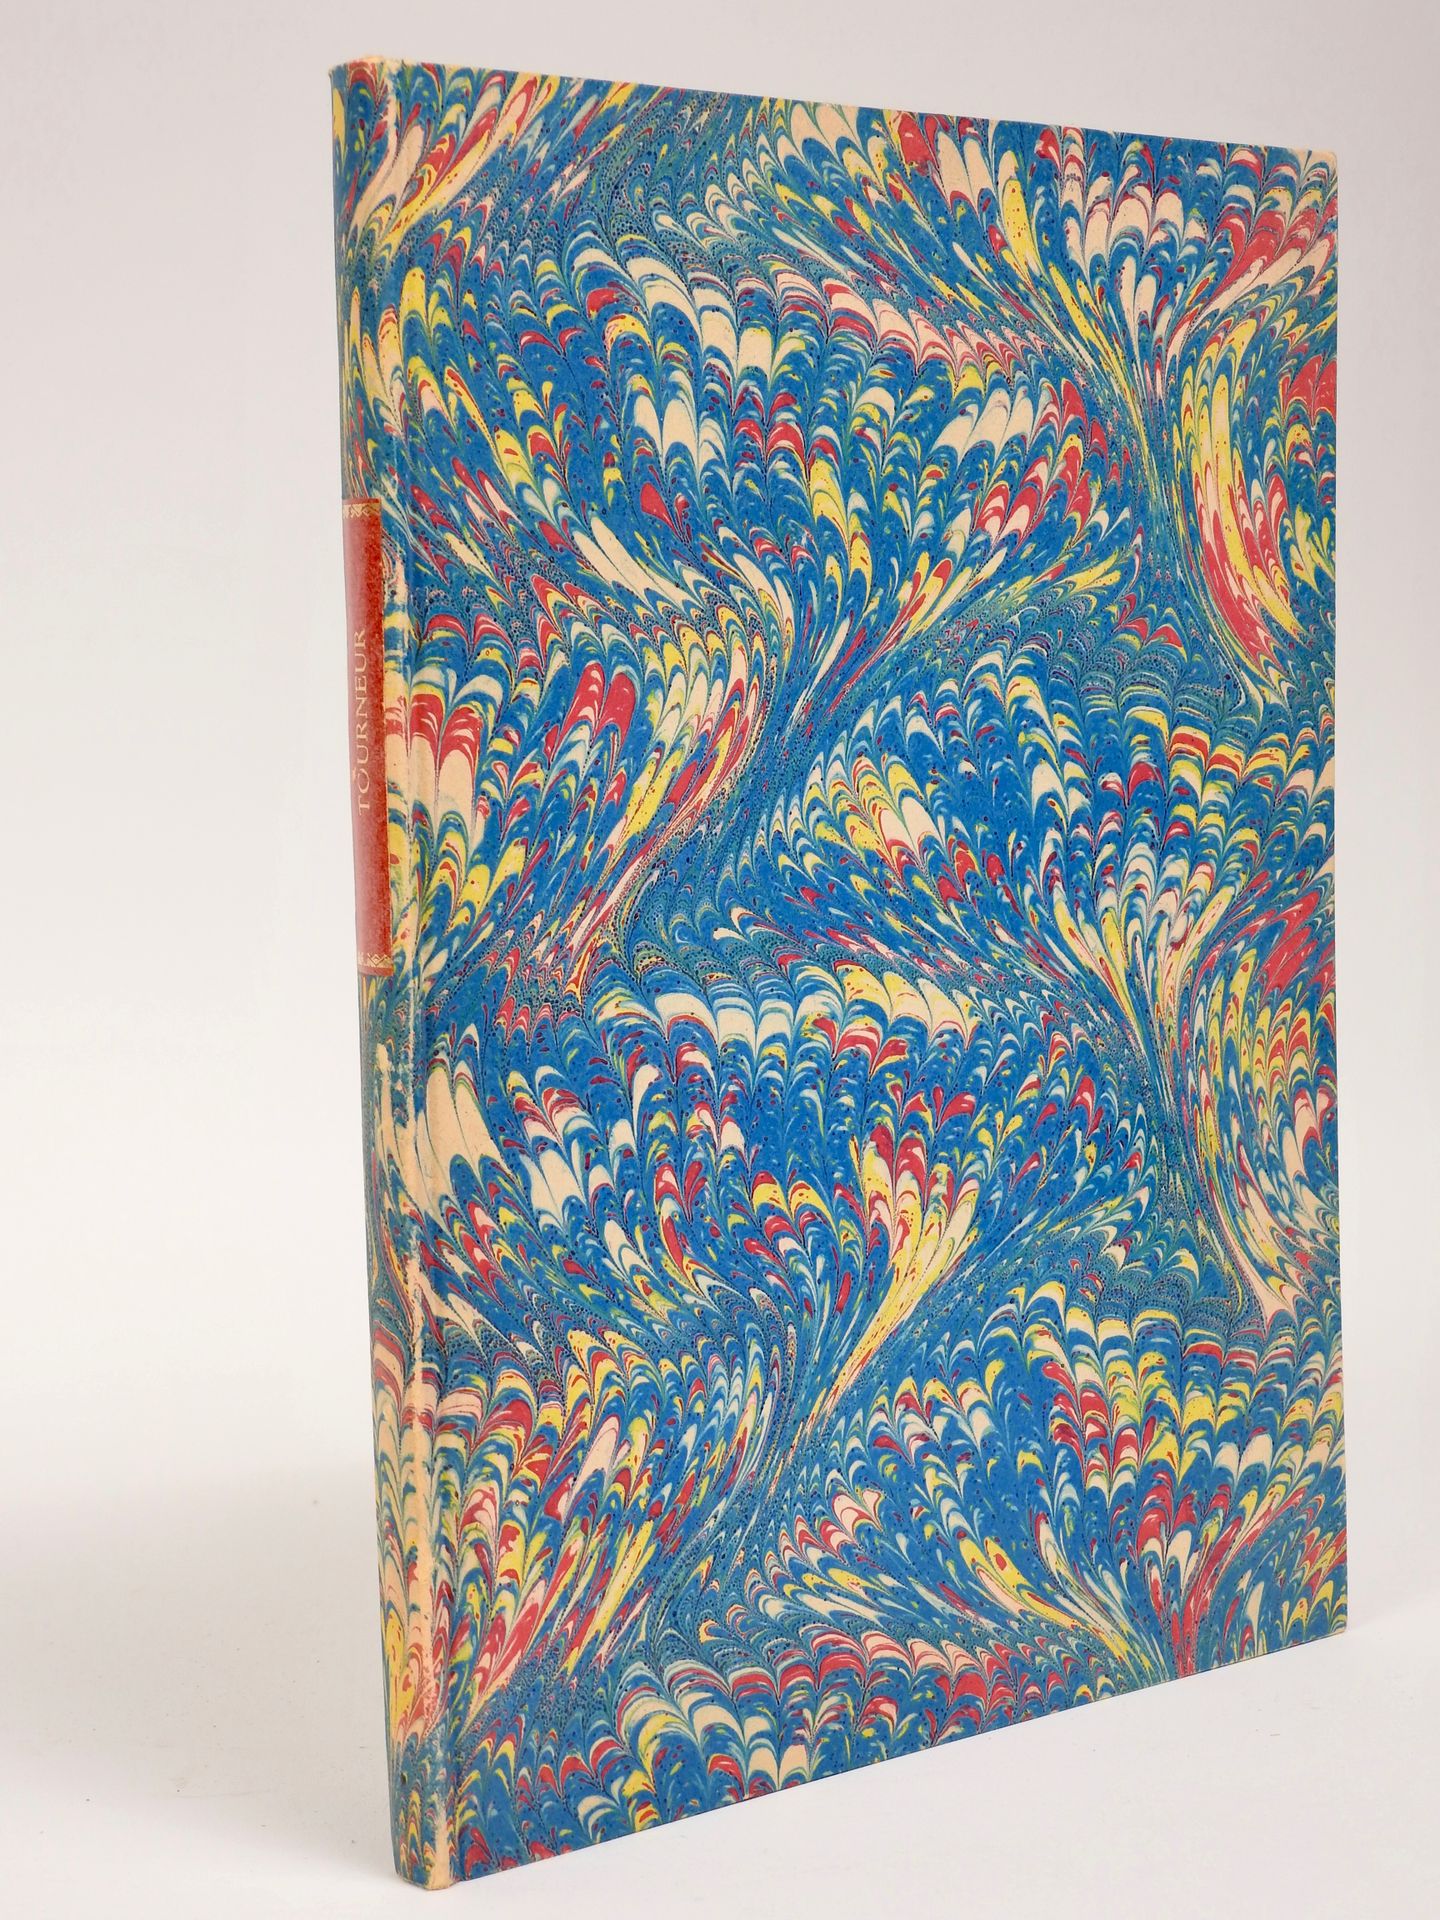 Null 特纳的艺术》。19世纪出版的4开本大理石花纹板相册。正文和13张文字外的图版。摘自《潘库克百科全书》。

专家让-弗朗索瓦-贝蒂斯 - jfbetis&hellip;